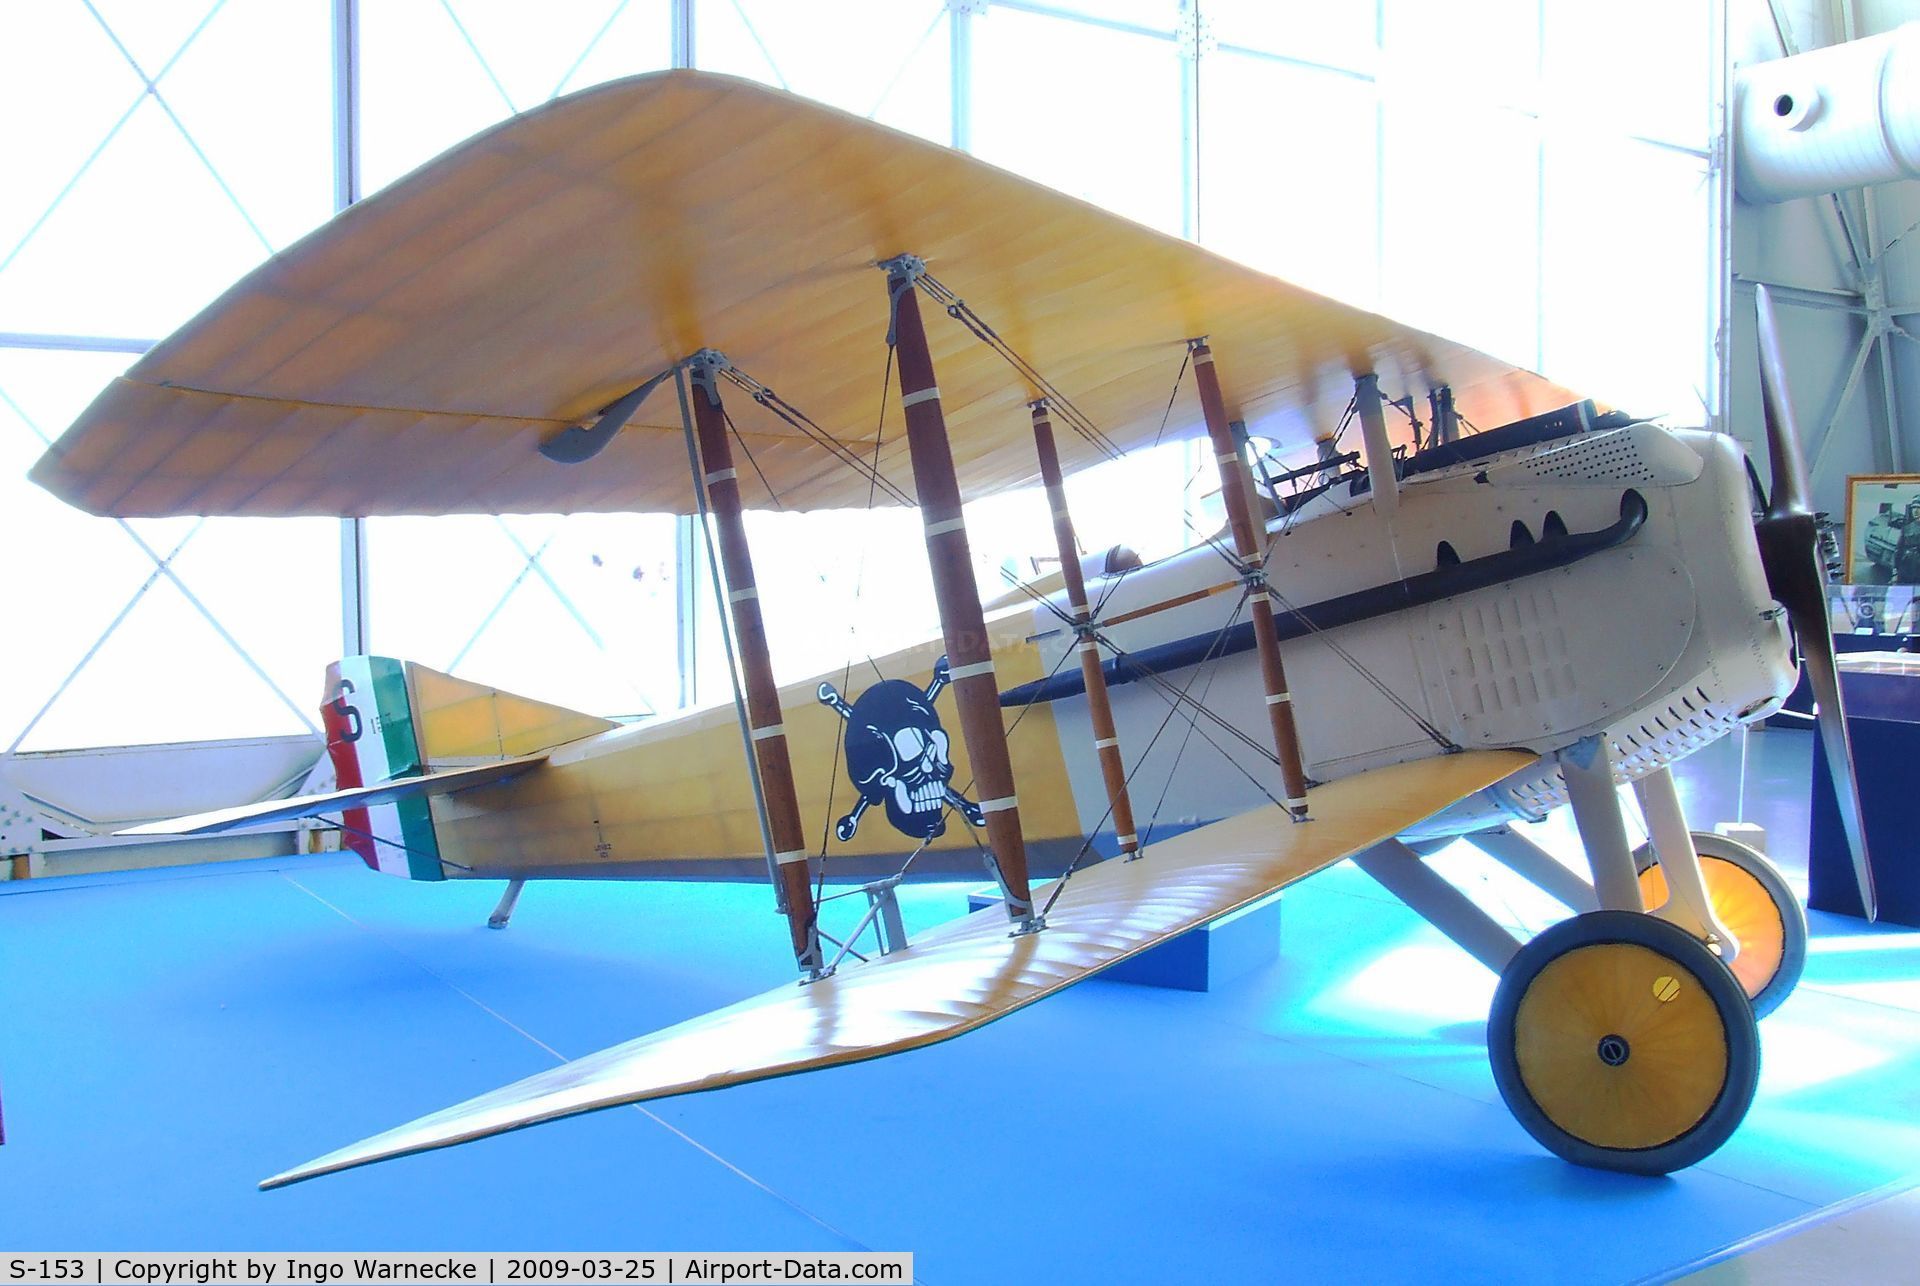 S-153, 1916 SPAD S-VII C/N Not found S-153, SPAD VII at the Museo storico dell'Aeronautica Militare, Vigna di Valle